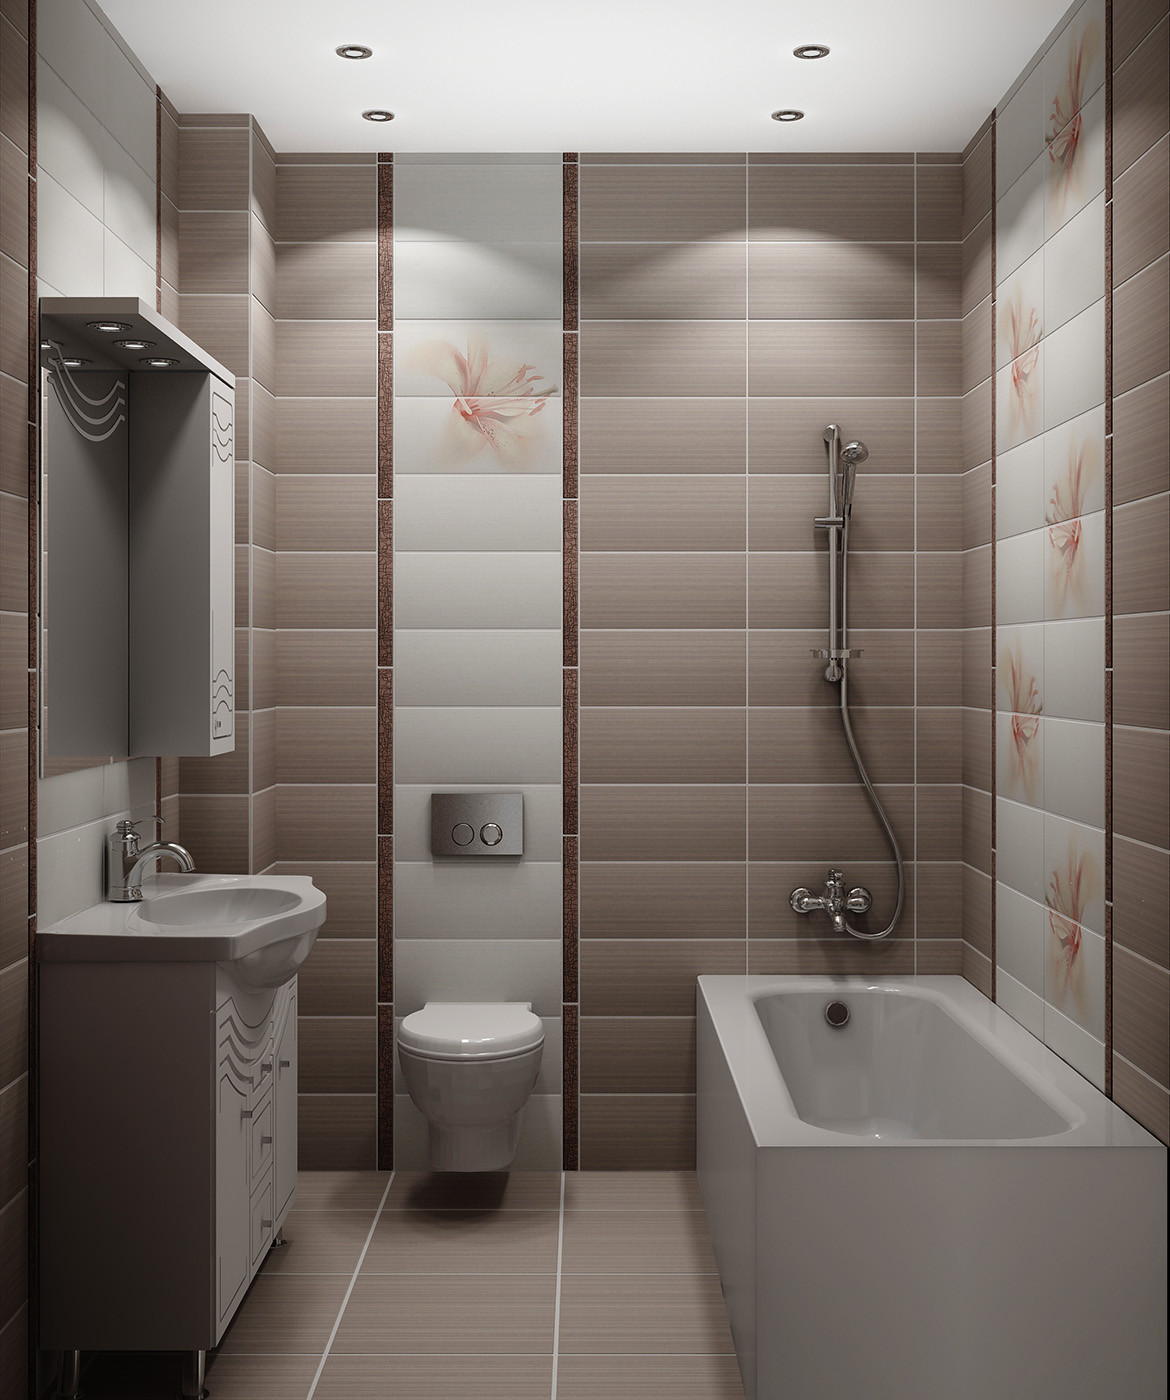 Дизайн кафеля в ванной комнате фото » Современный дизайн на Vip-1gl